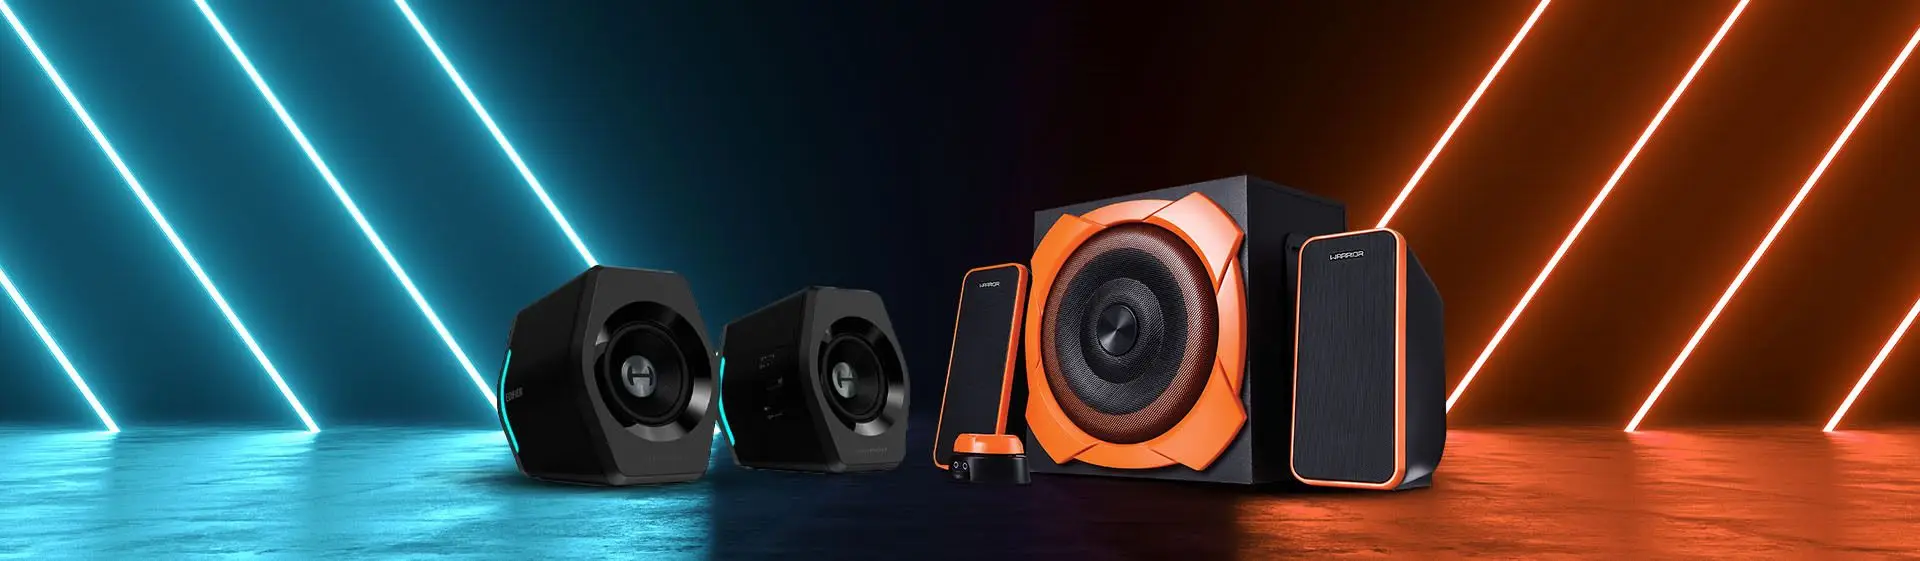 Melhor caixa de som para PC: 6 opções para comprar em 2022